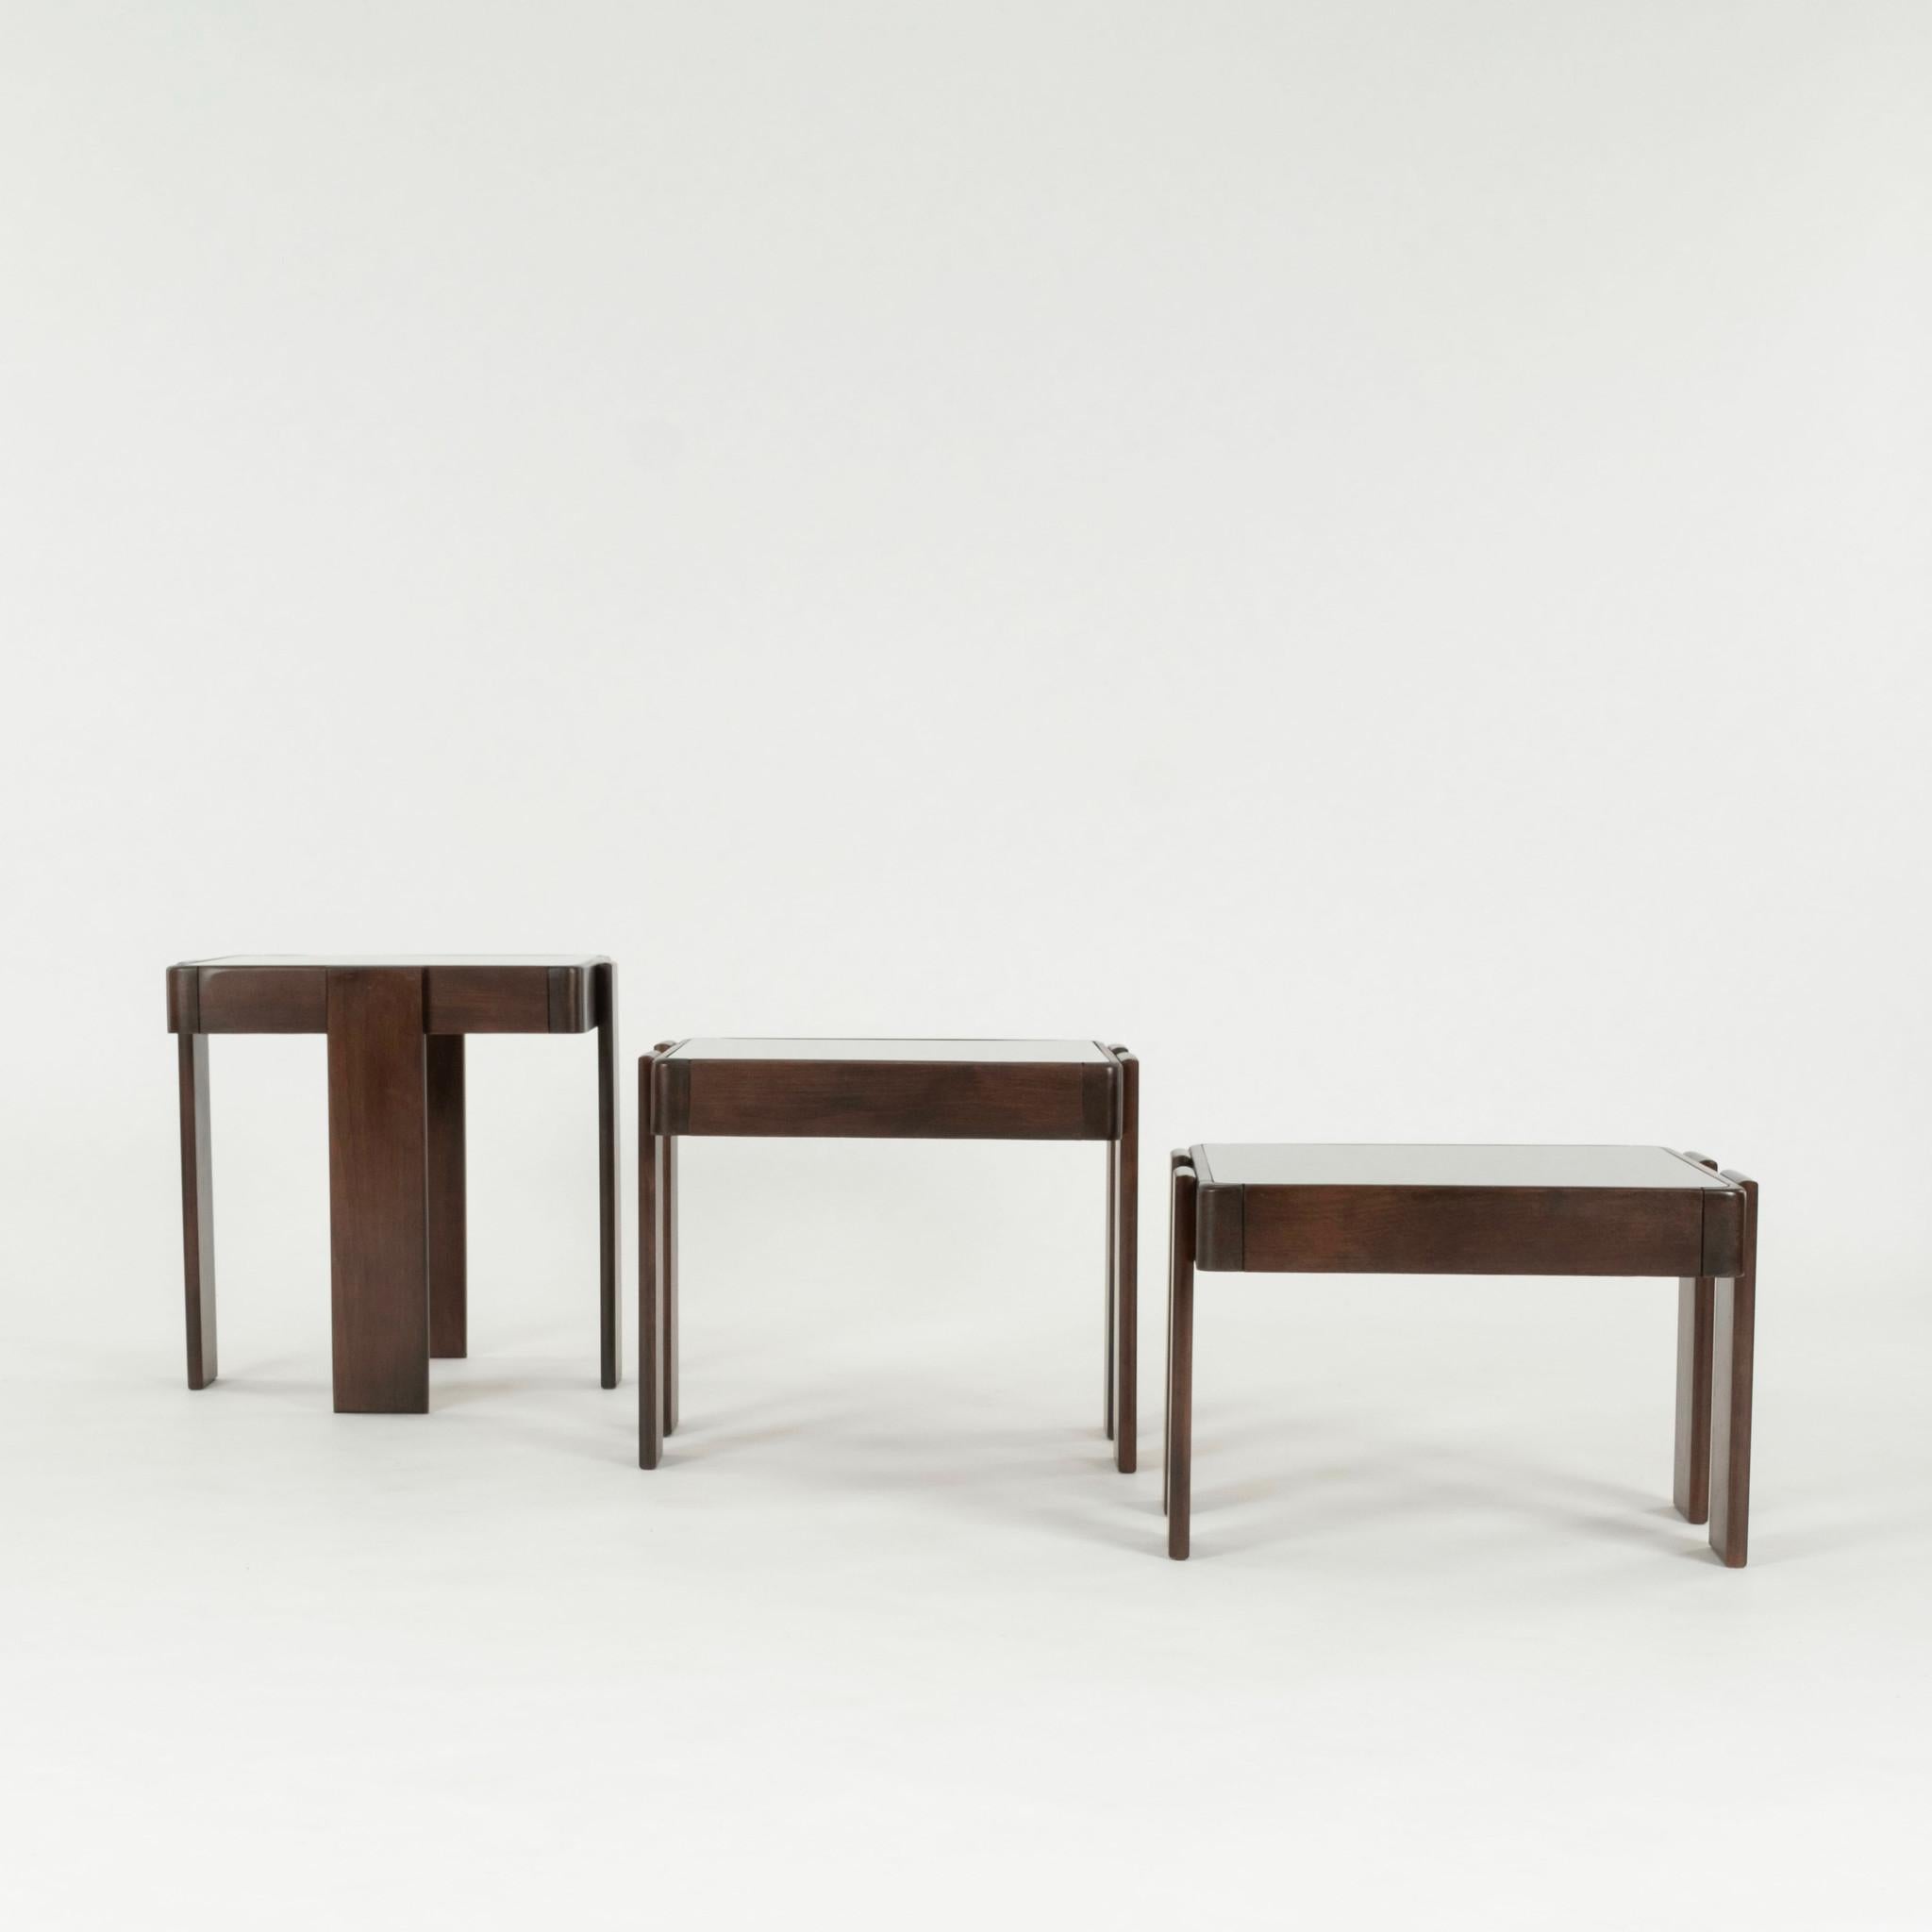 Ensemble de trois tables gigognes en bois de noyer et verre fumé bronze par Gianfranco Frattini pour Cassina.

Gianfranco Frattini (15 mai 1926 - 6 avril 2004) était un architecte et designer italien. Il fait partie de la génération qui a créé le